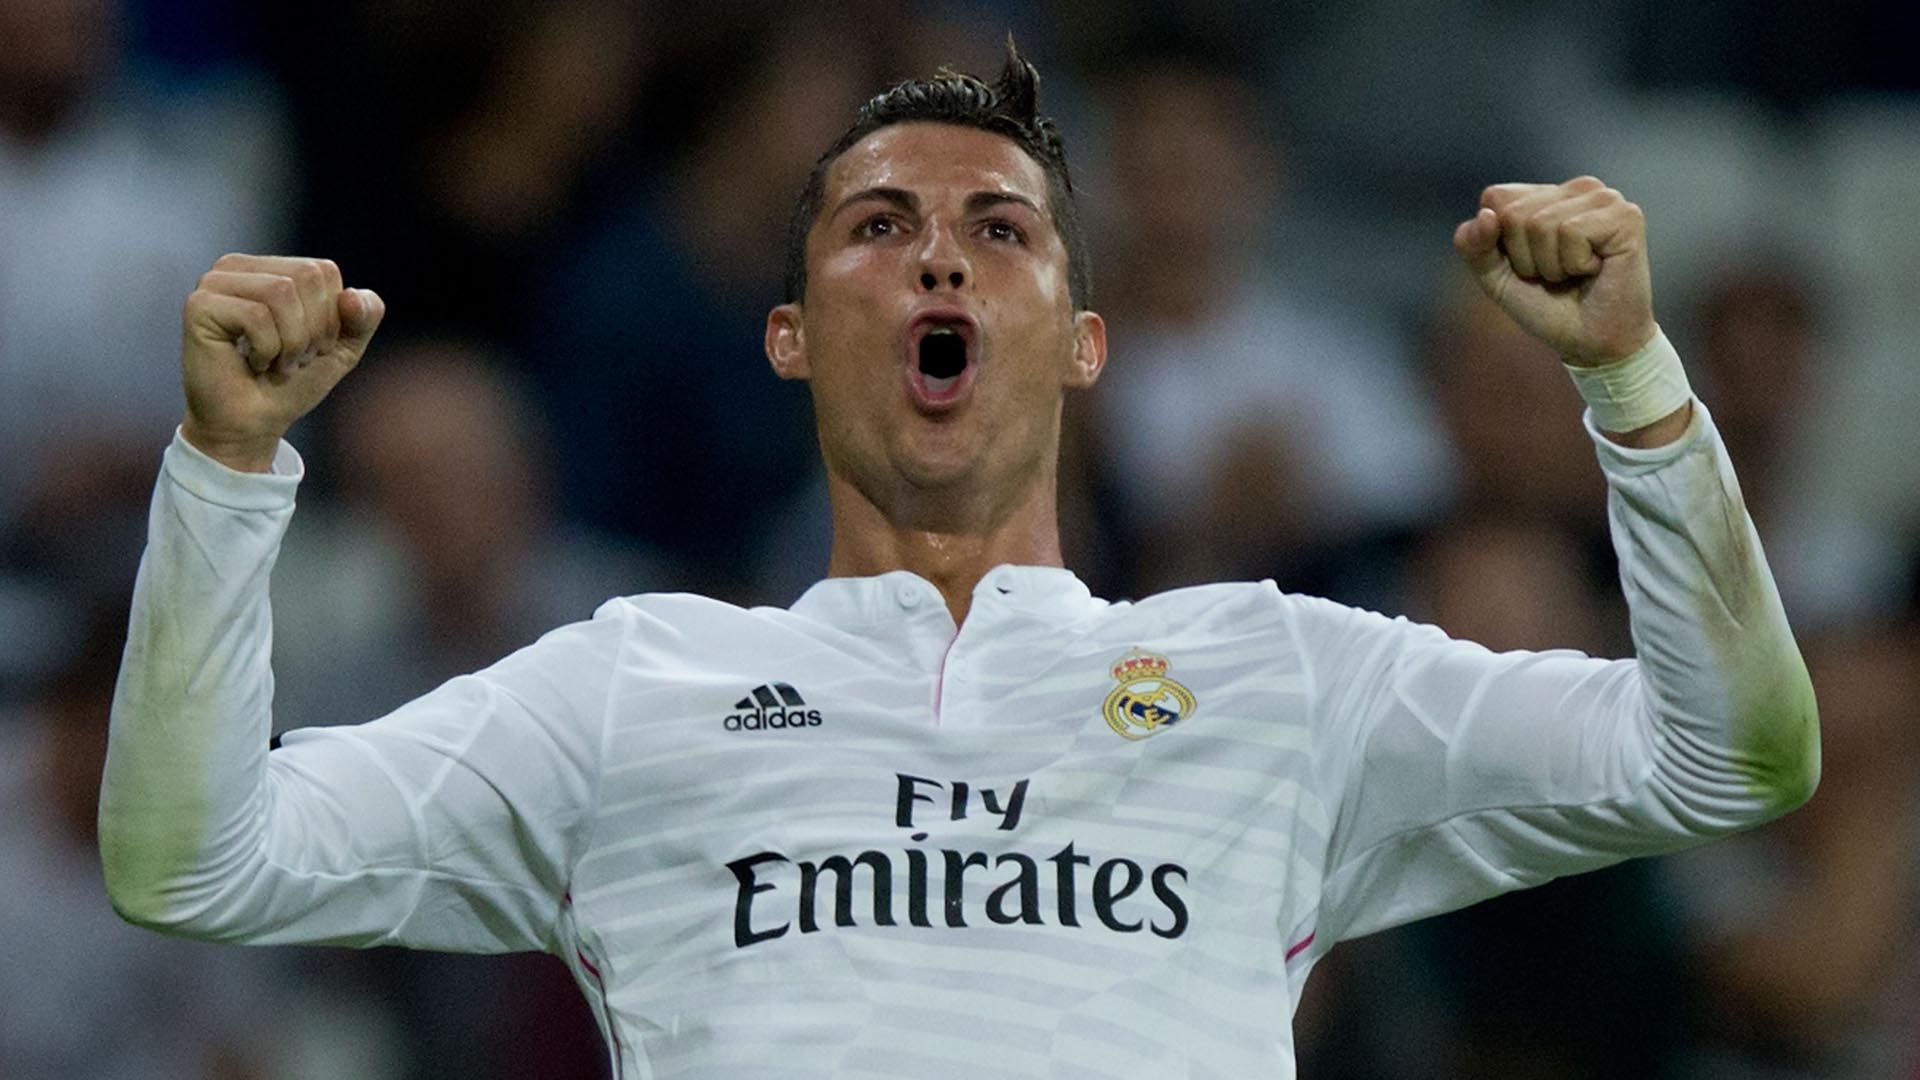 EuroMillions-Gewinner zieht neben Ronaldo ein